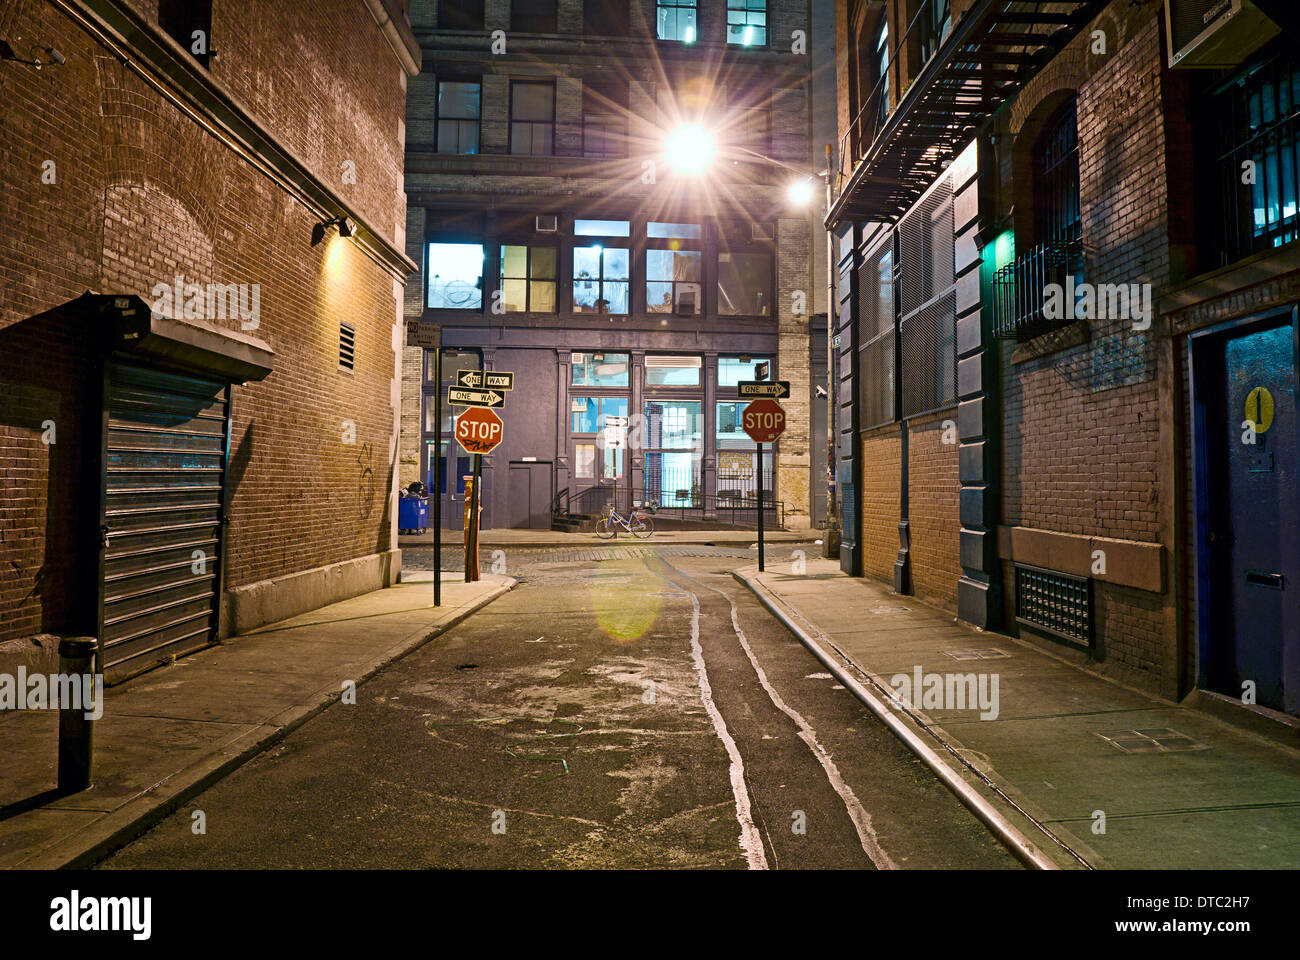 Deserted dangerous empty alleyway in urban industrial scene. Stock Photo